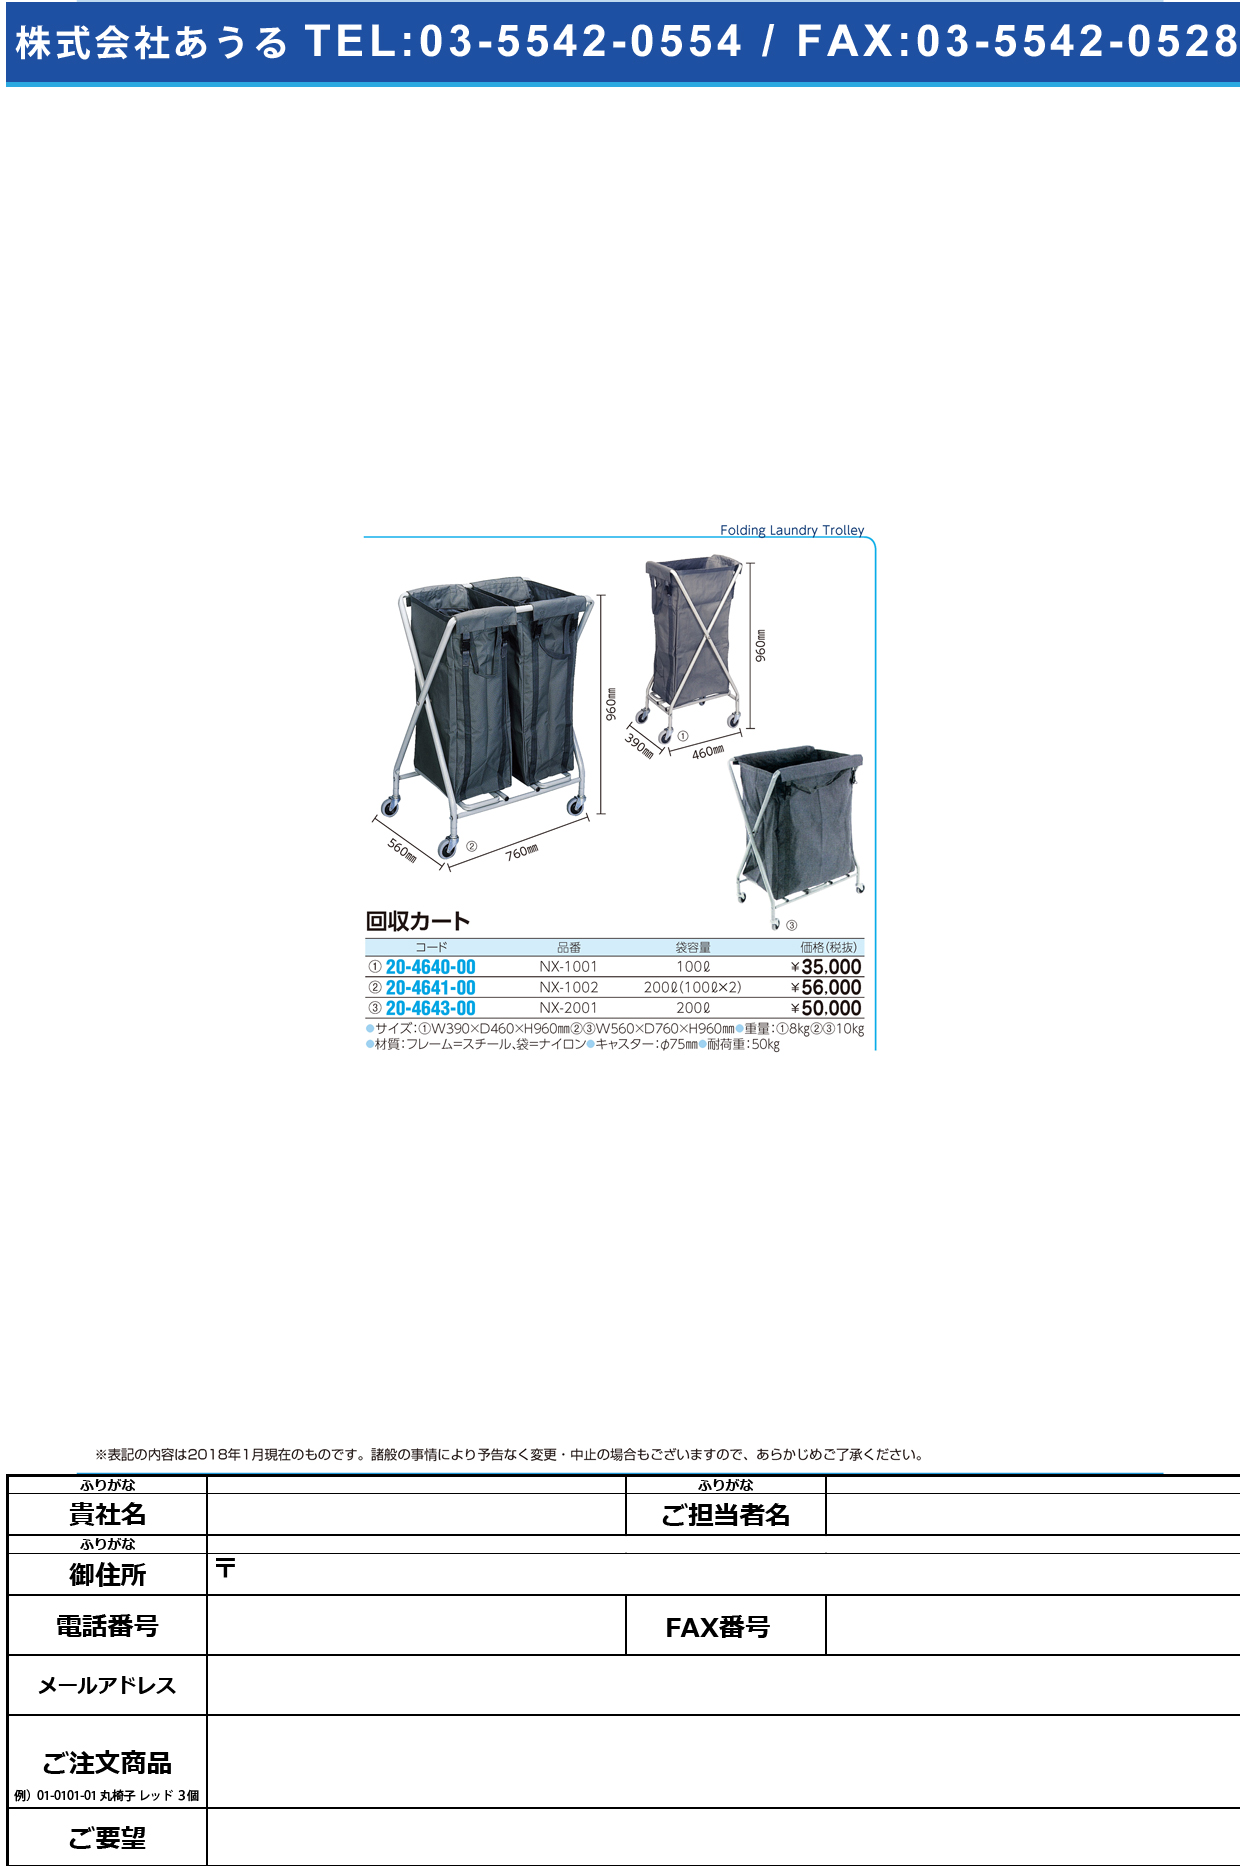 (20-4641-00)回収・リネンカート NX-1002 ｶｲｼｭｳﾘﾈﾝｶｰﾄ(金沢車輛)【1台単位】【2018年カタログ商品】